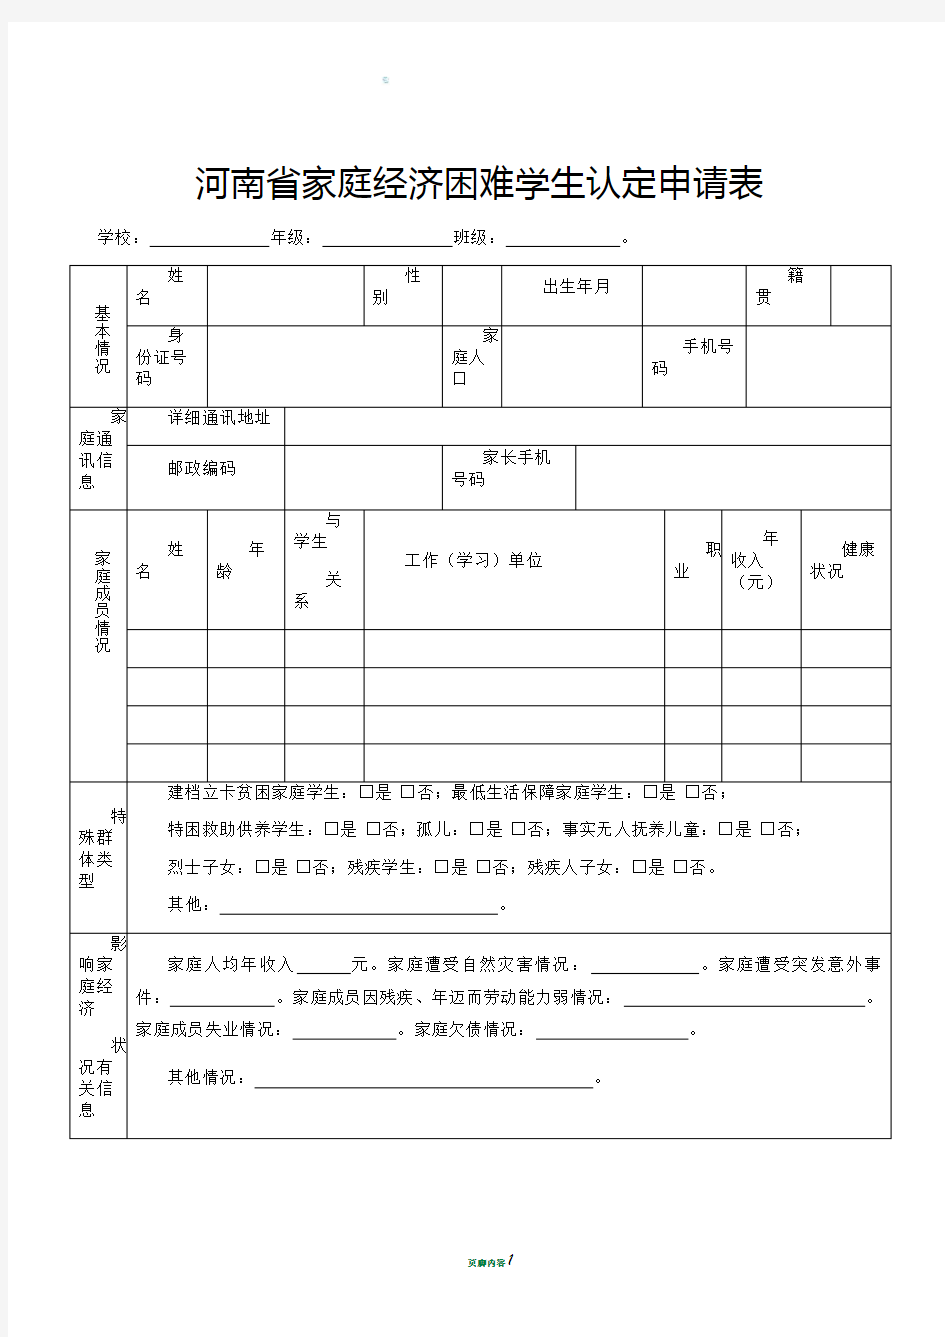 河南省家庭经济困难学生认定申请表模板